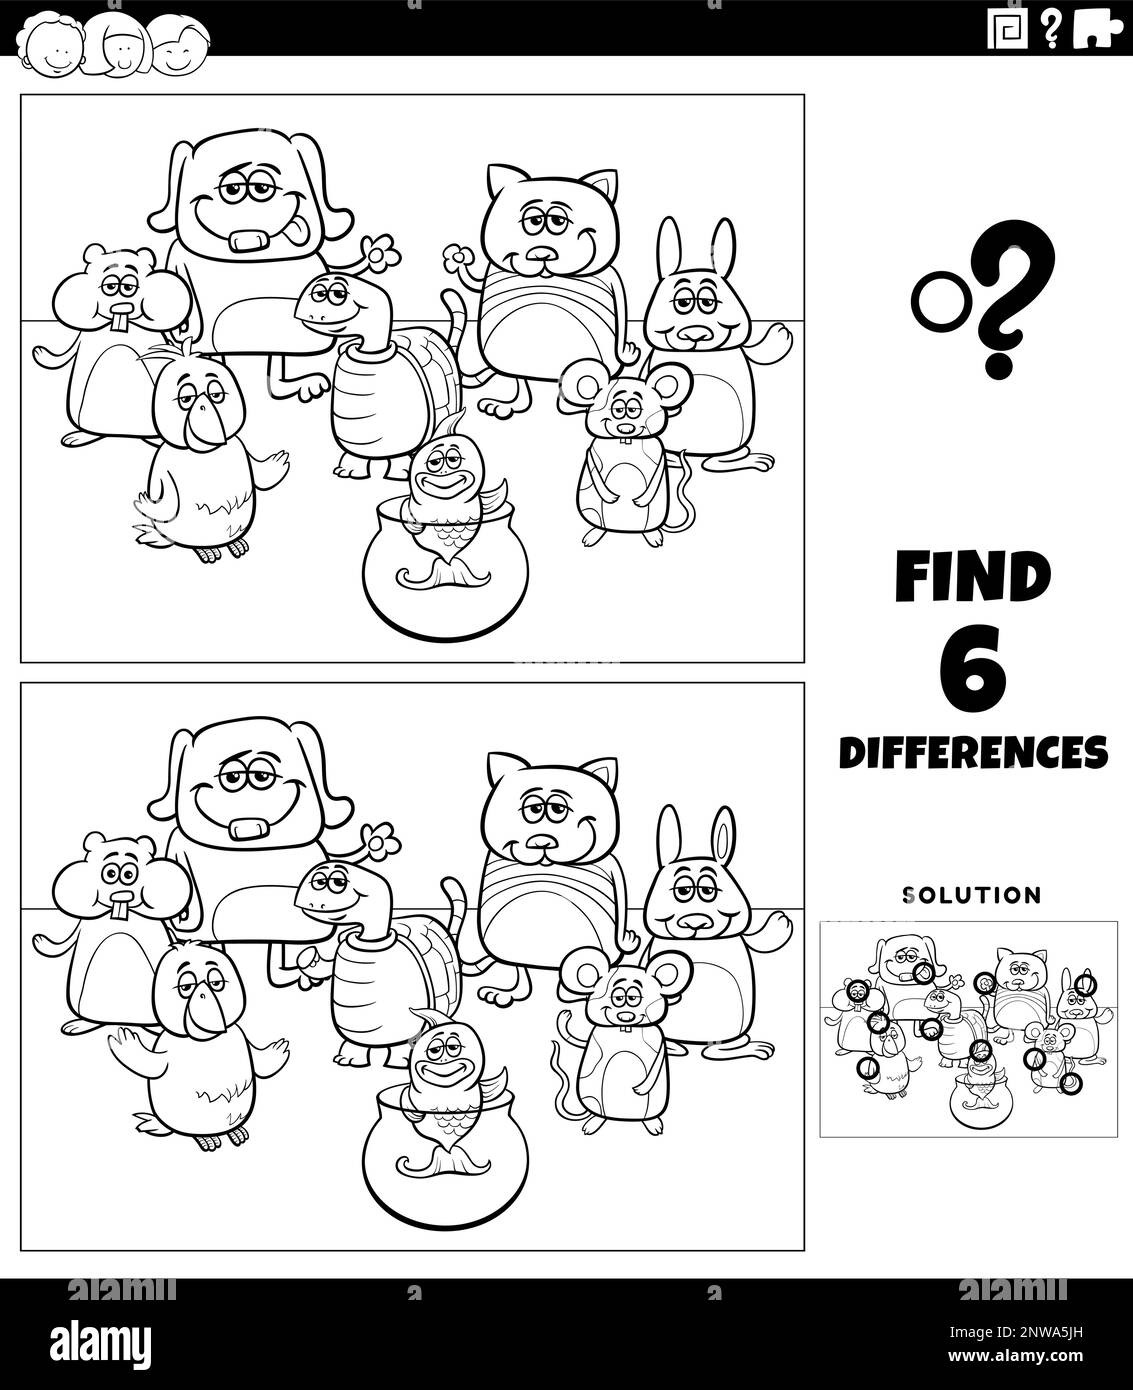 Schwarz-weiß-Cartoon-Darstellung der Unterschiede zwischen Bildern pädagogisches Spiel mit lustigen Haustieren Tierfiguren Gruppenfarbe Stock Vektor